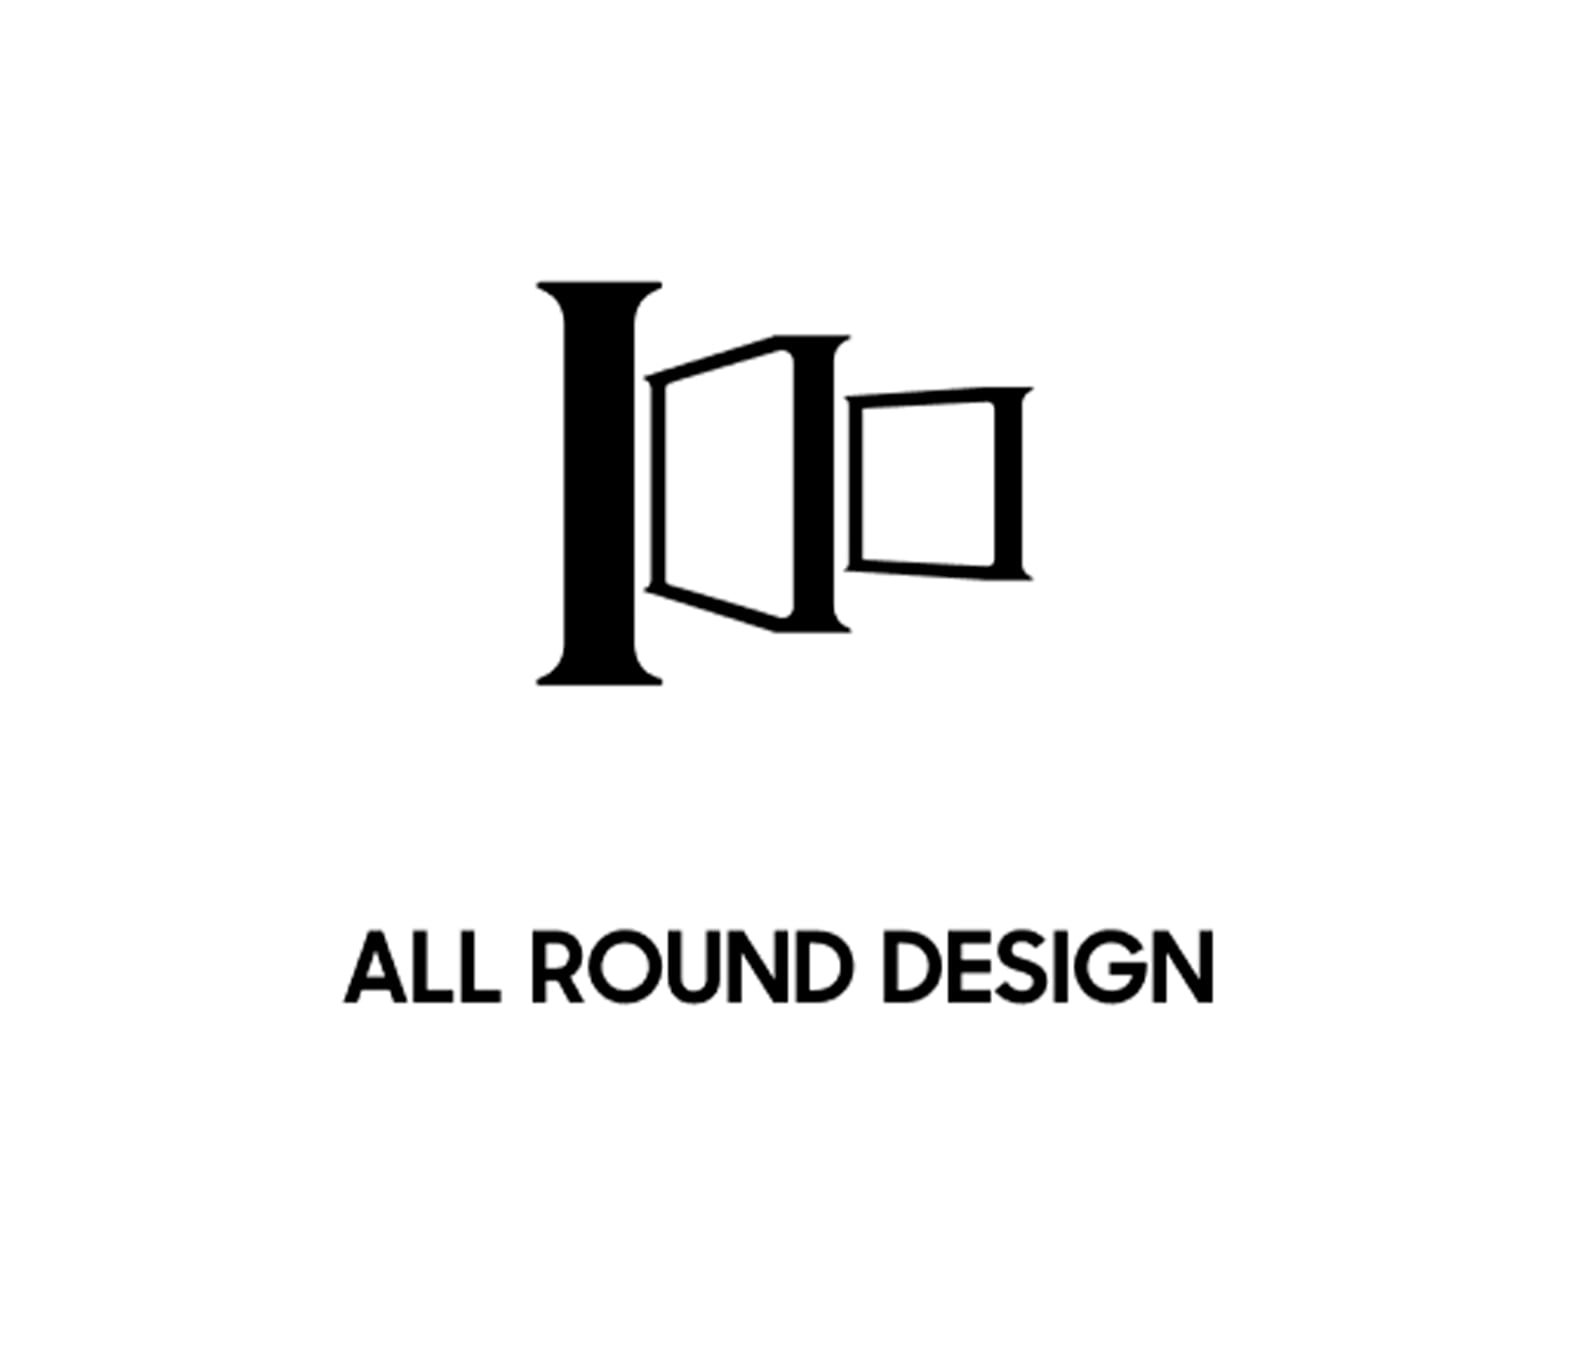 All round design - Icon 2